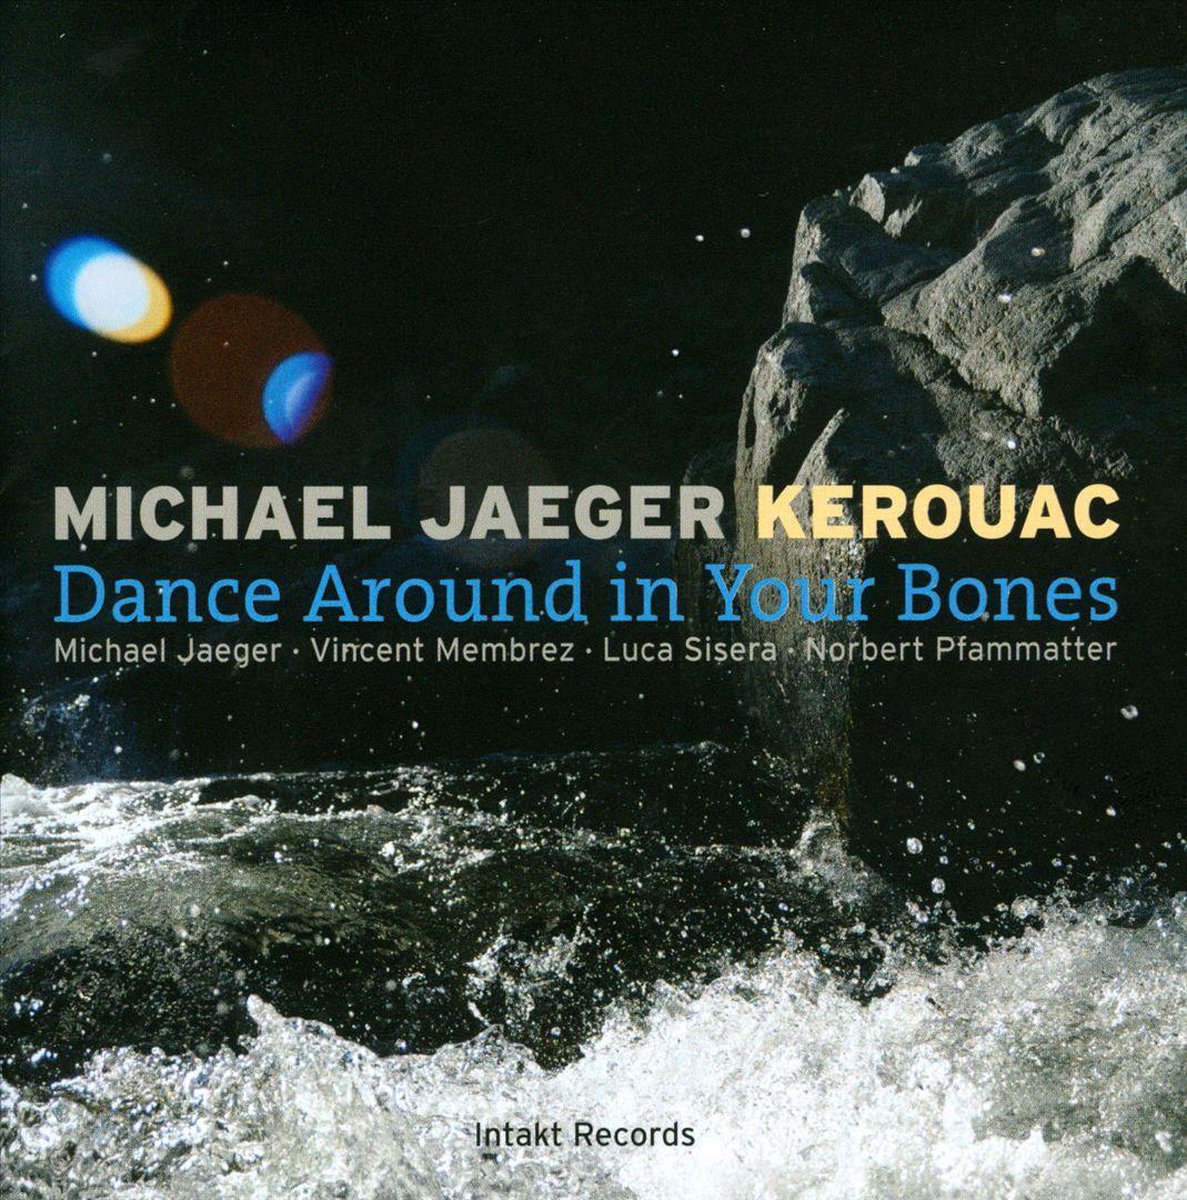 Michael Jaeger KEROUAC: Dance Around In Your Bones